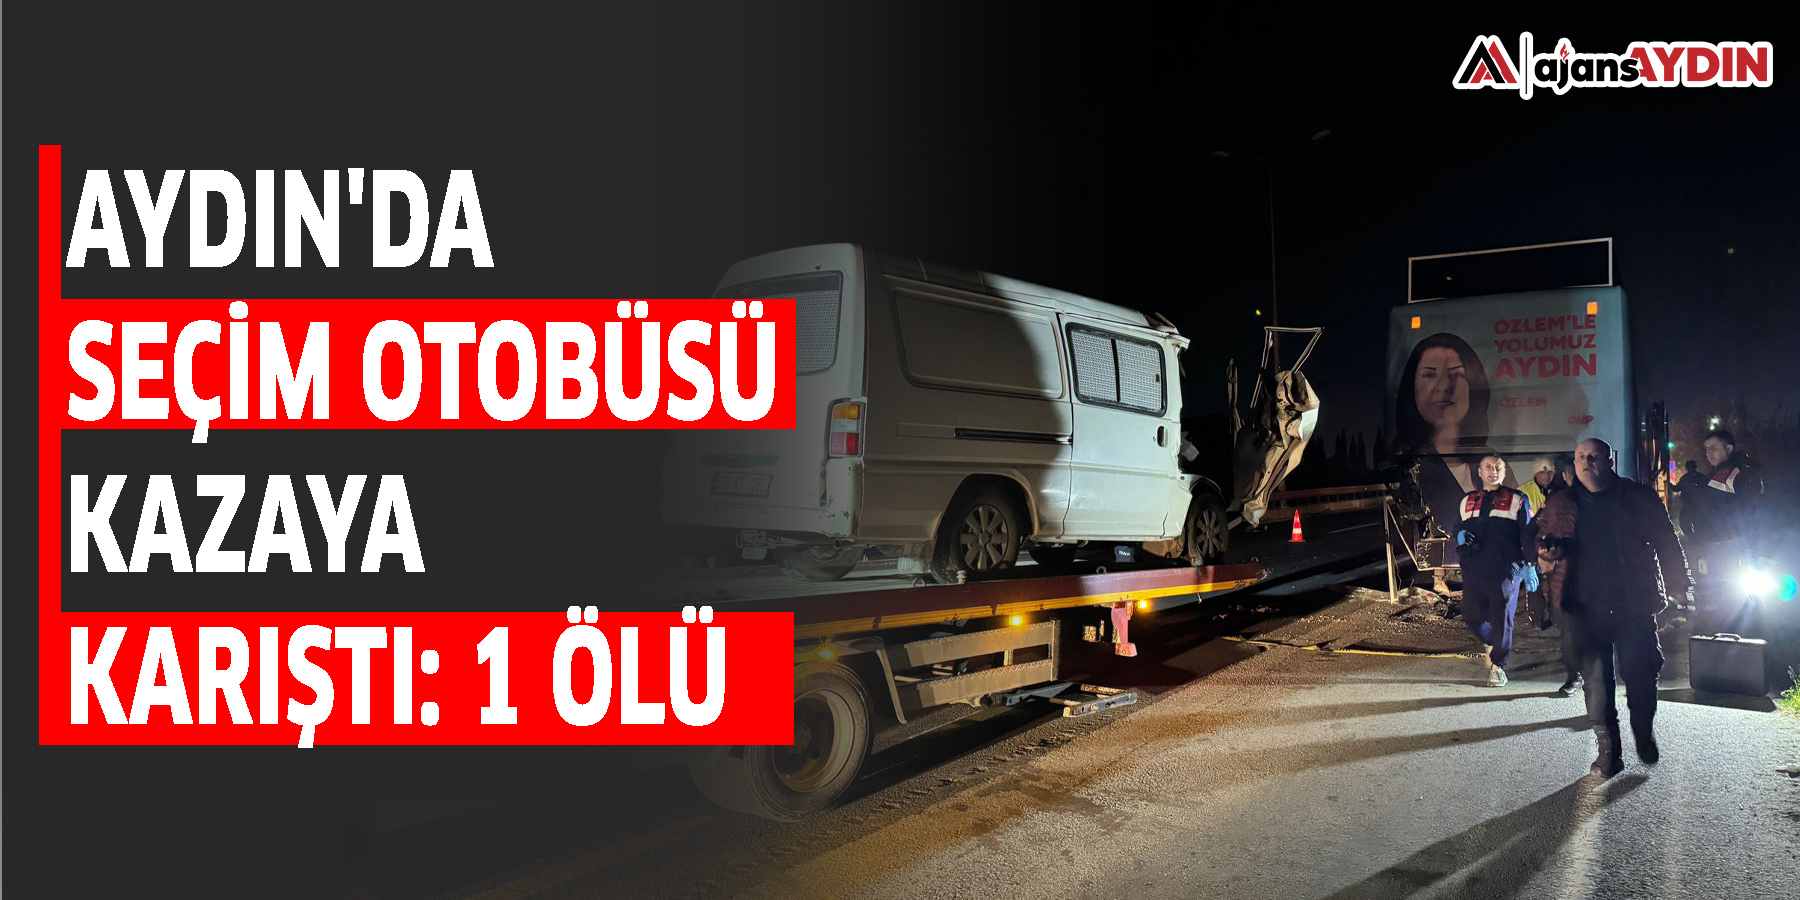 Aydın'da seçim otobüsü kazaya karıştı: 1 ölü